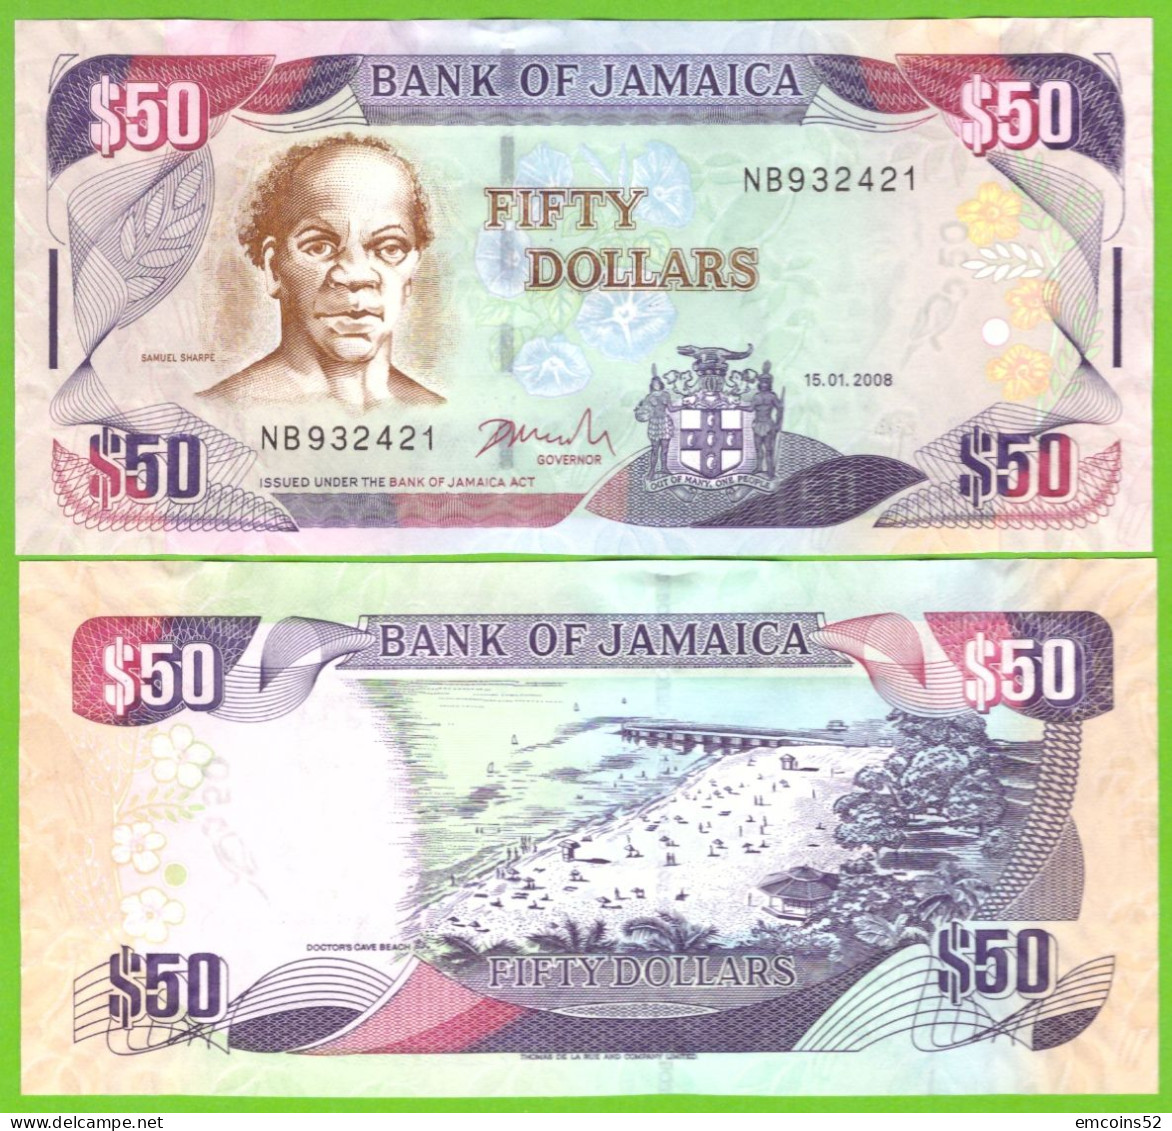 JAMAICA 50 DOLLARS 2008 P-83c  UNC - Jamaique